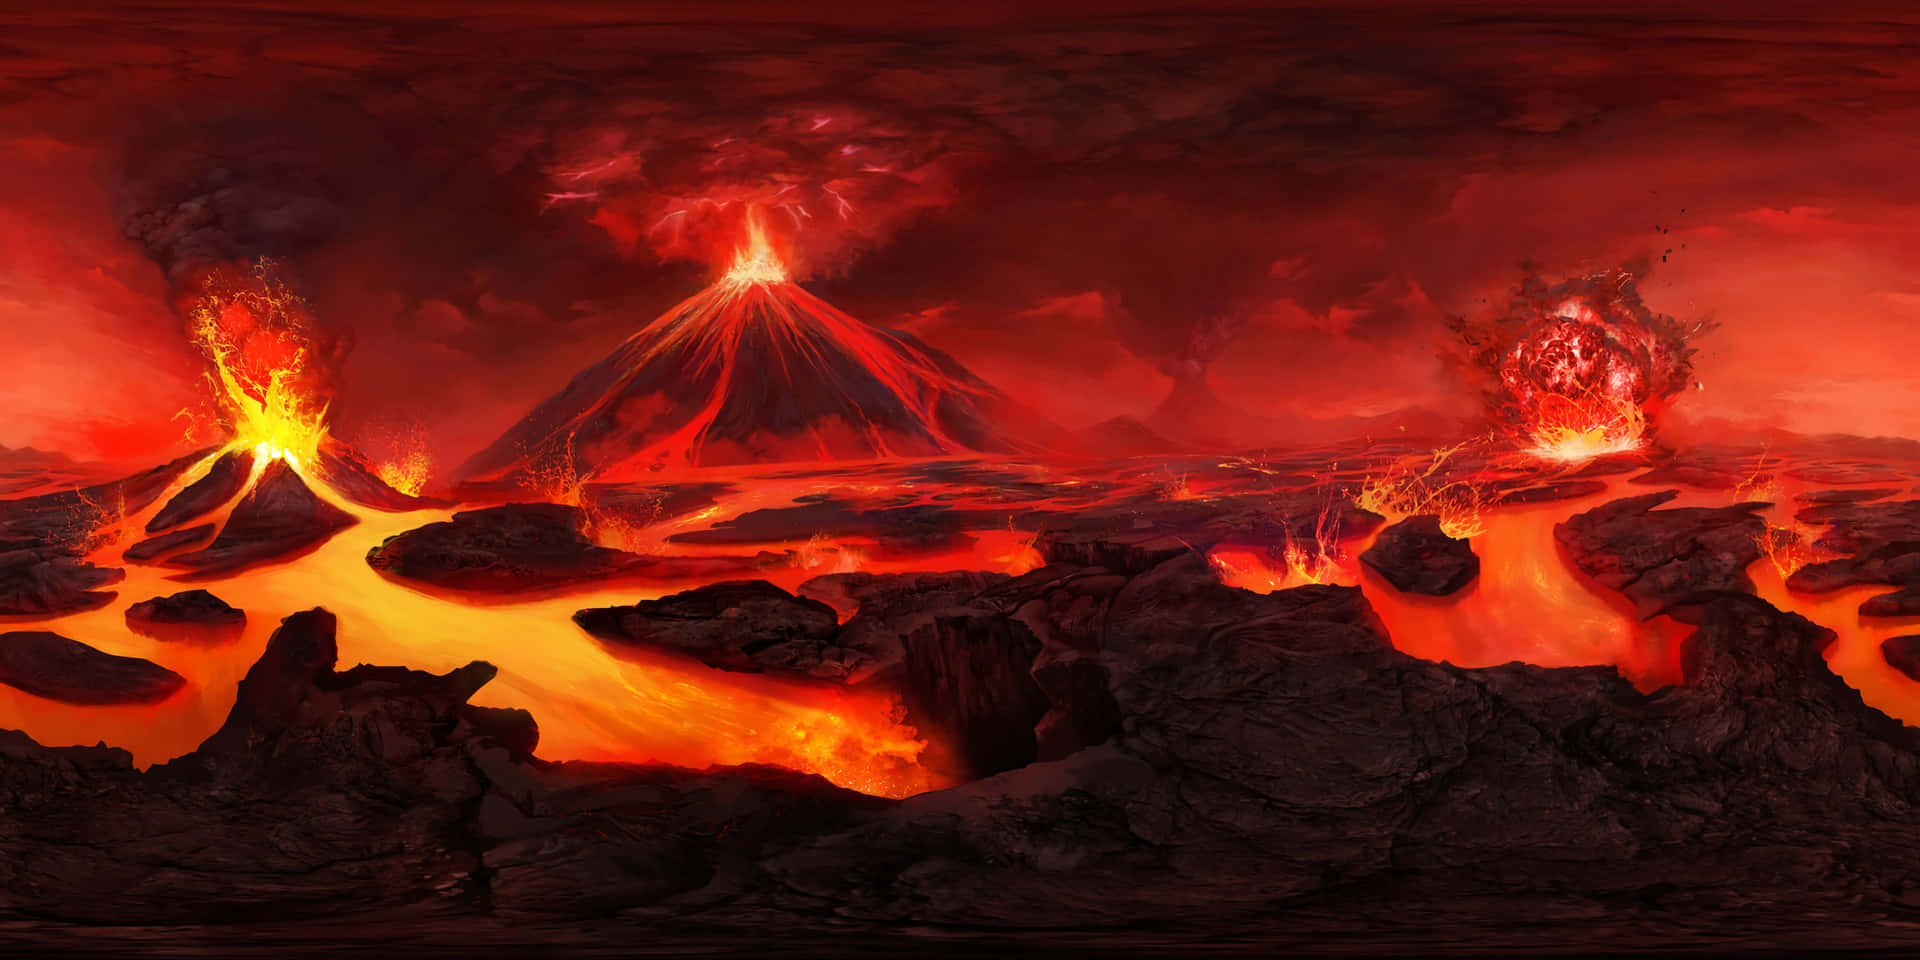 Vulkanutbrottvisar Den Råa Kraften I Naturen.